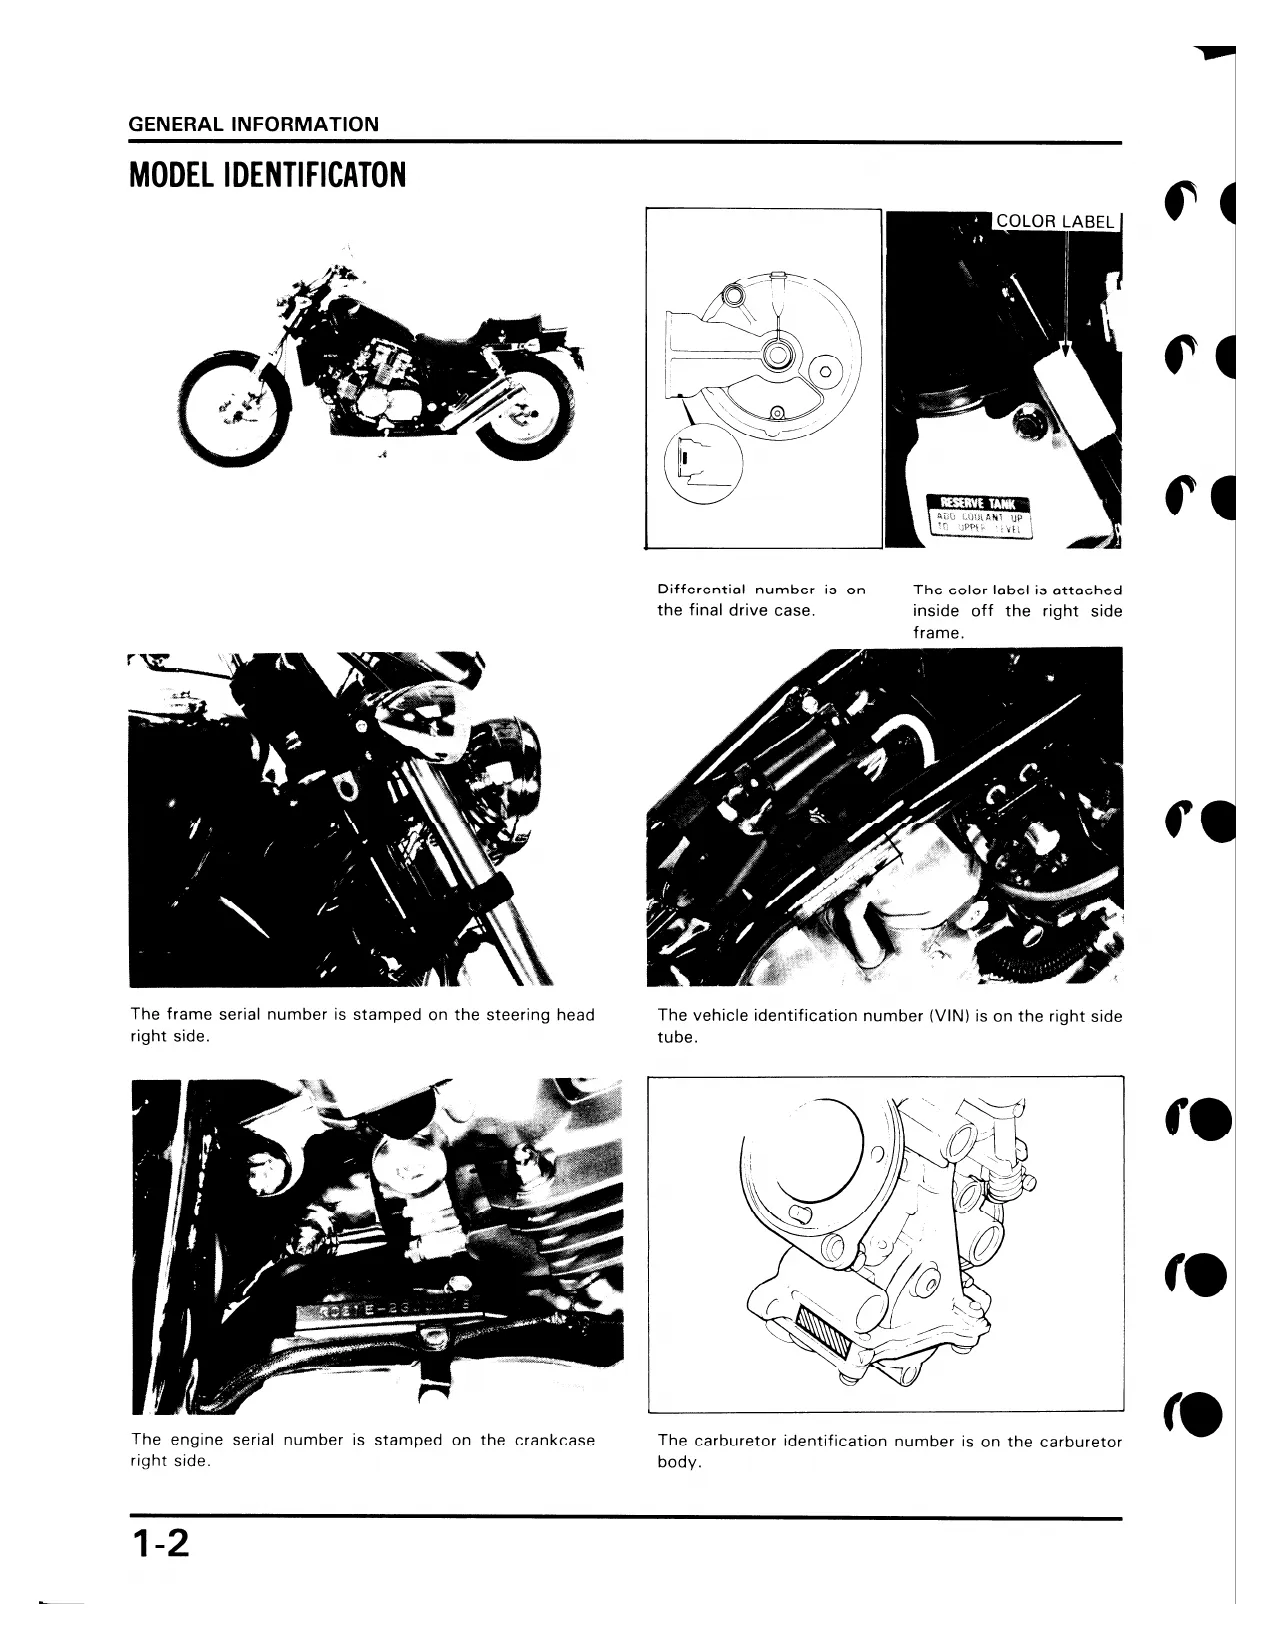 1987 Honda VF 700 C Magna repair and service manual Preview image 2